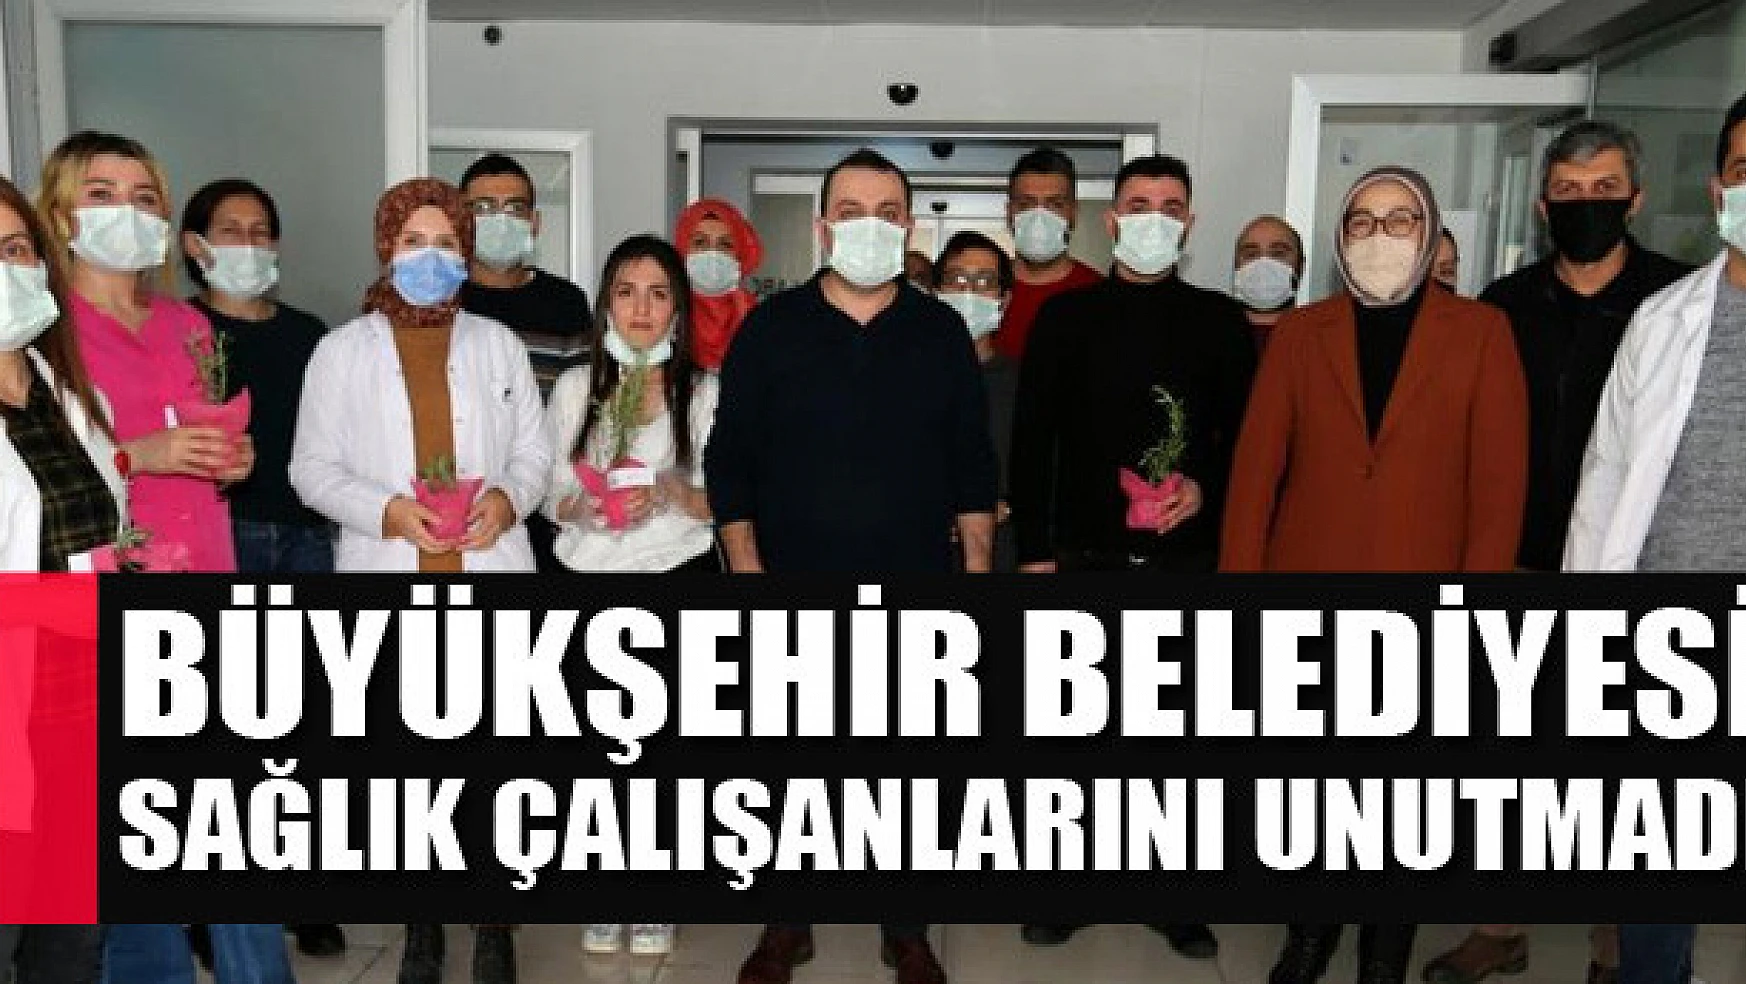 Büyükşehir Belediyesi sağlık çalışanlarını unutmadı